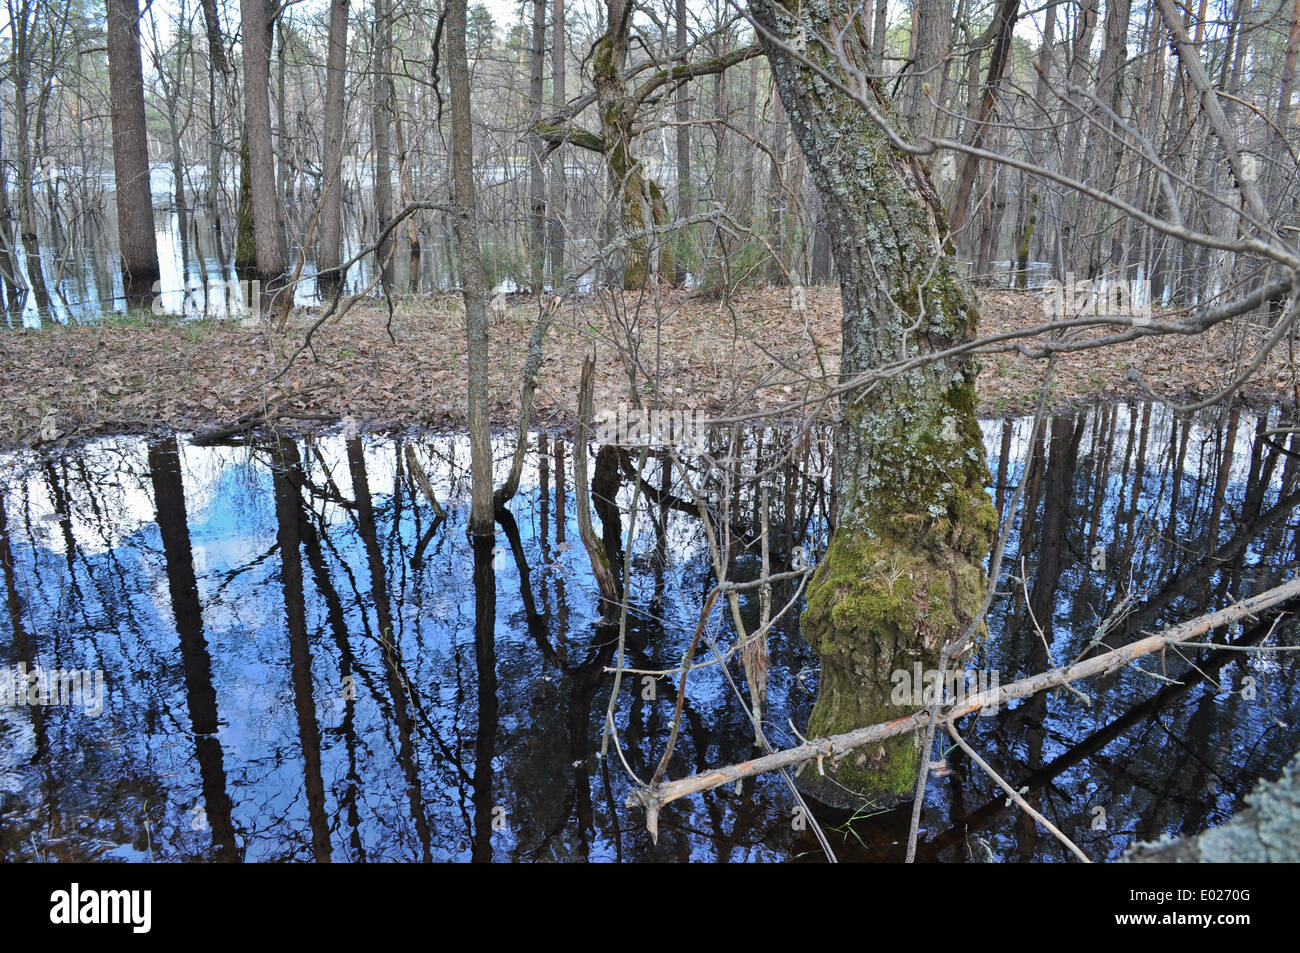 Landschaften und Details der Natur im Wald am Fluss Bank Anfang Mai. Russland, der Nationalpark "Meschtscherski. Stockfoto